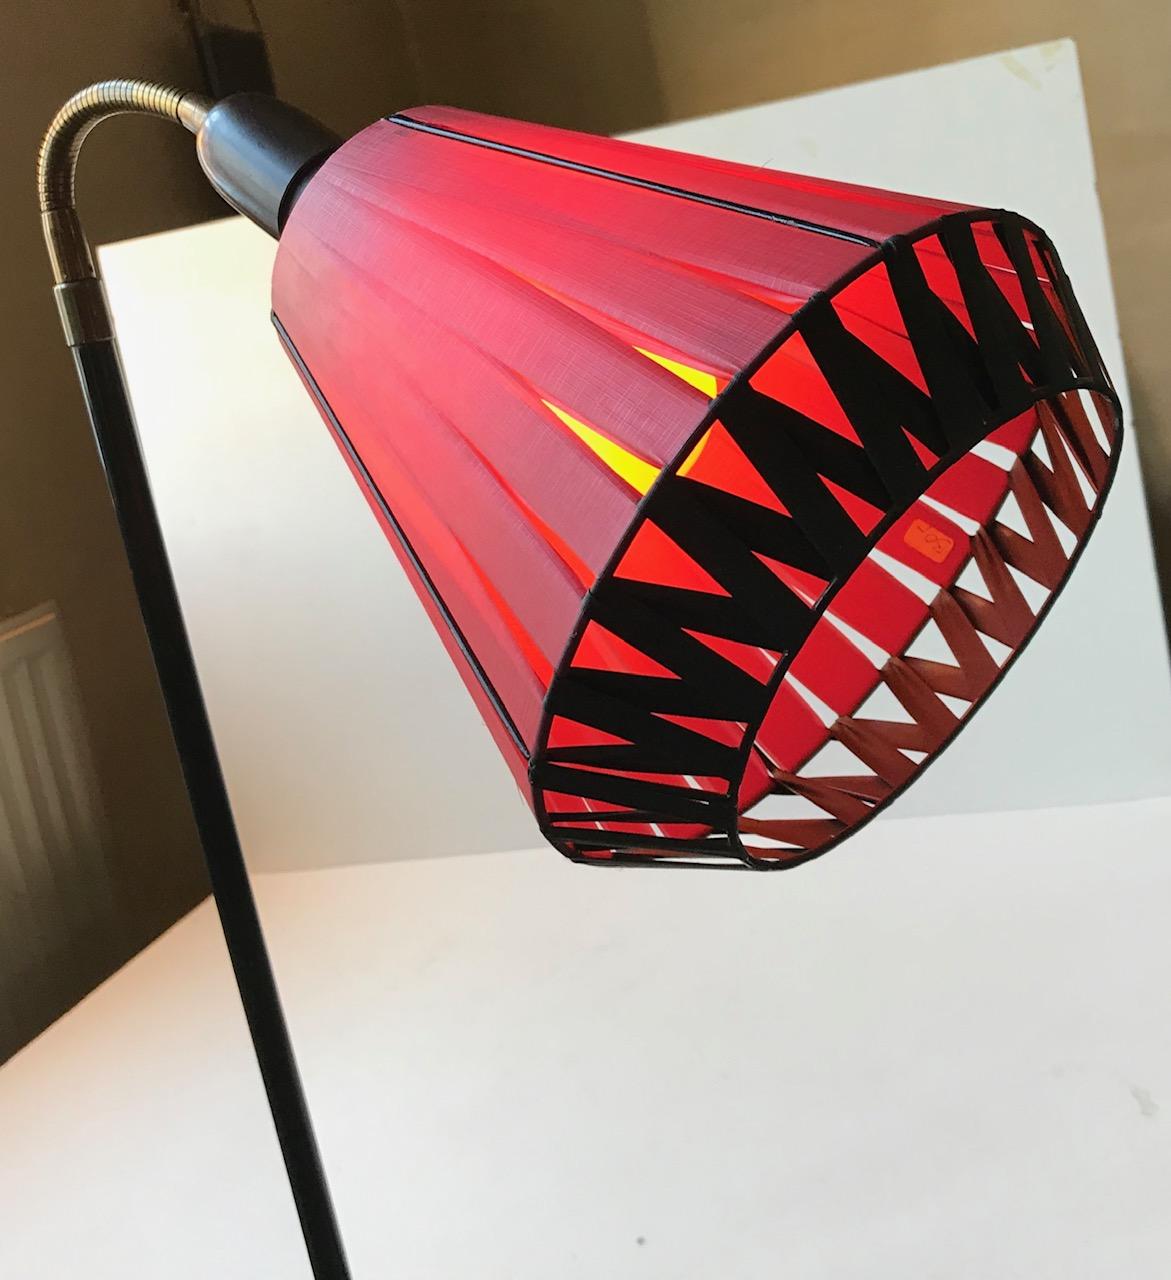 Mid-Century Modern Scandinavian Adjustable Floor Lamp, 1950s For Sale